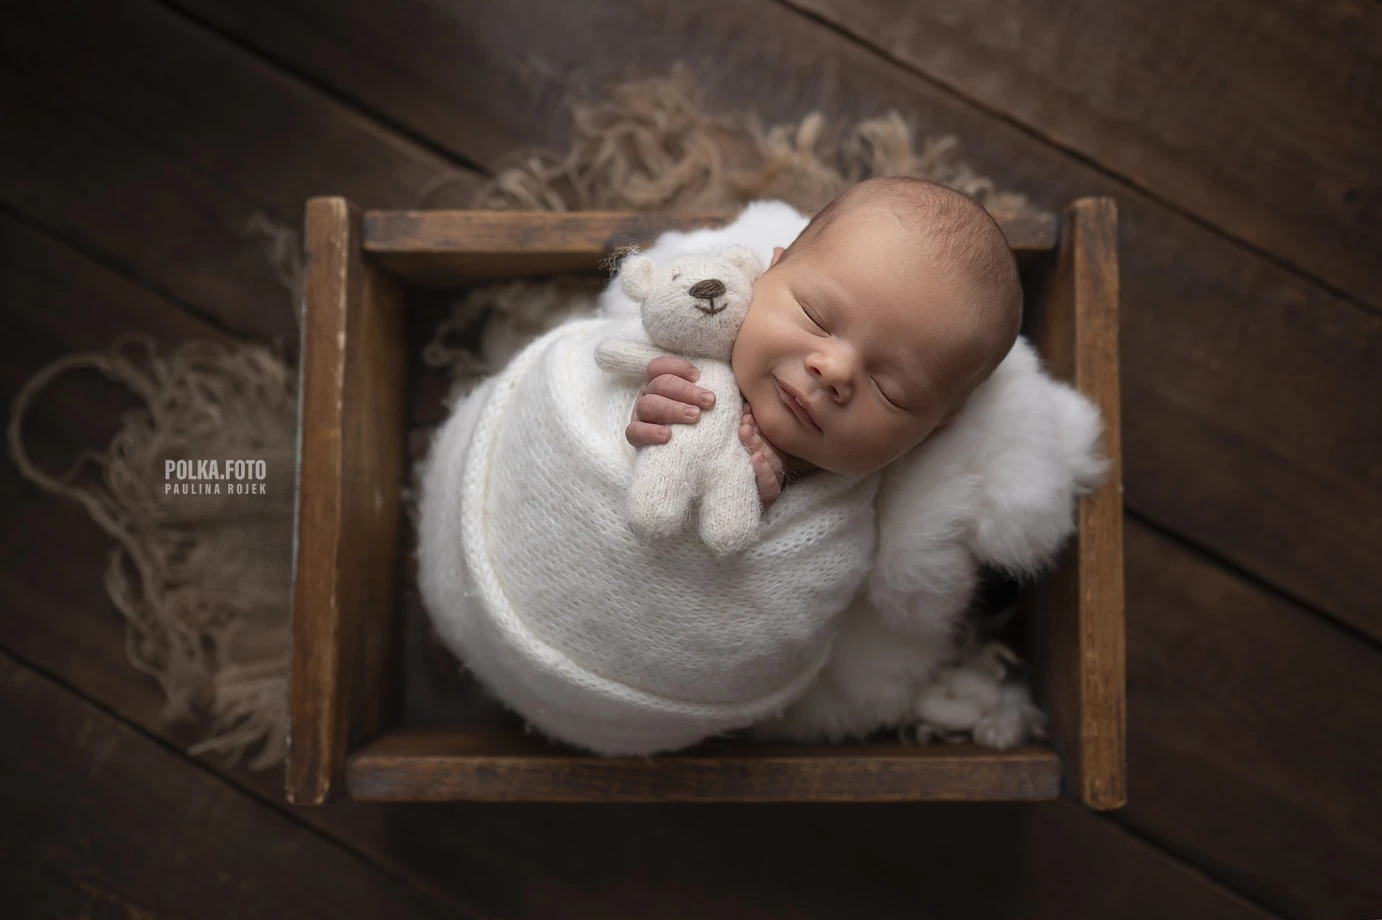 zdjęcia tarnow fotograf polkafoto-paulina-rojek portfolio zdjecia noworodkow sesje noworodkowe niemowlę